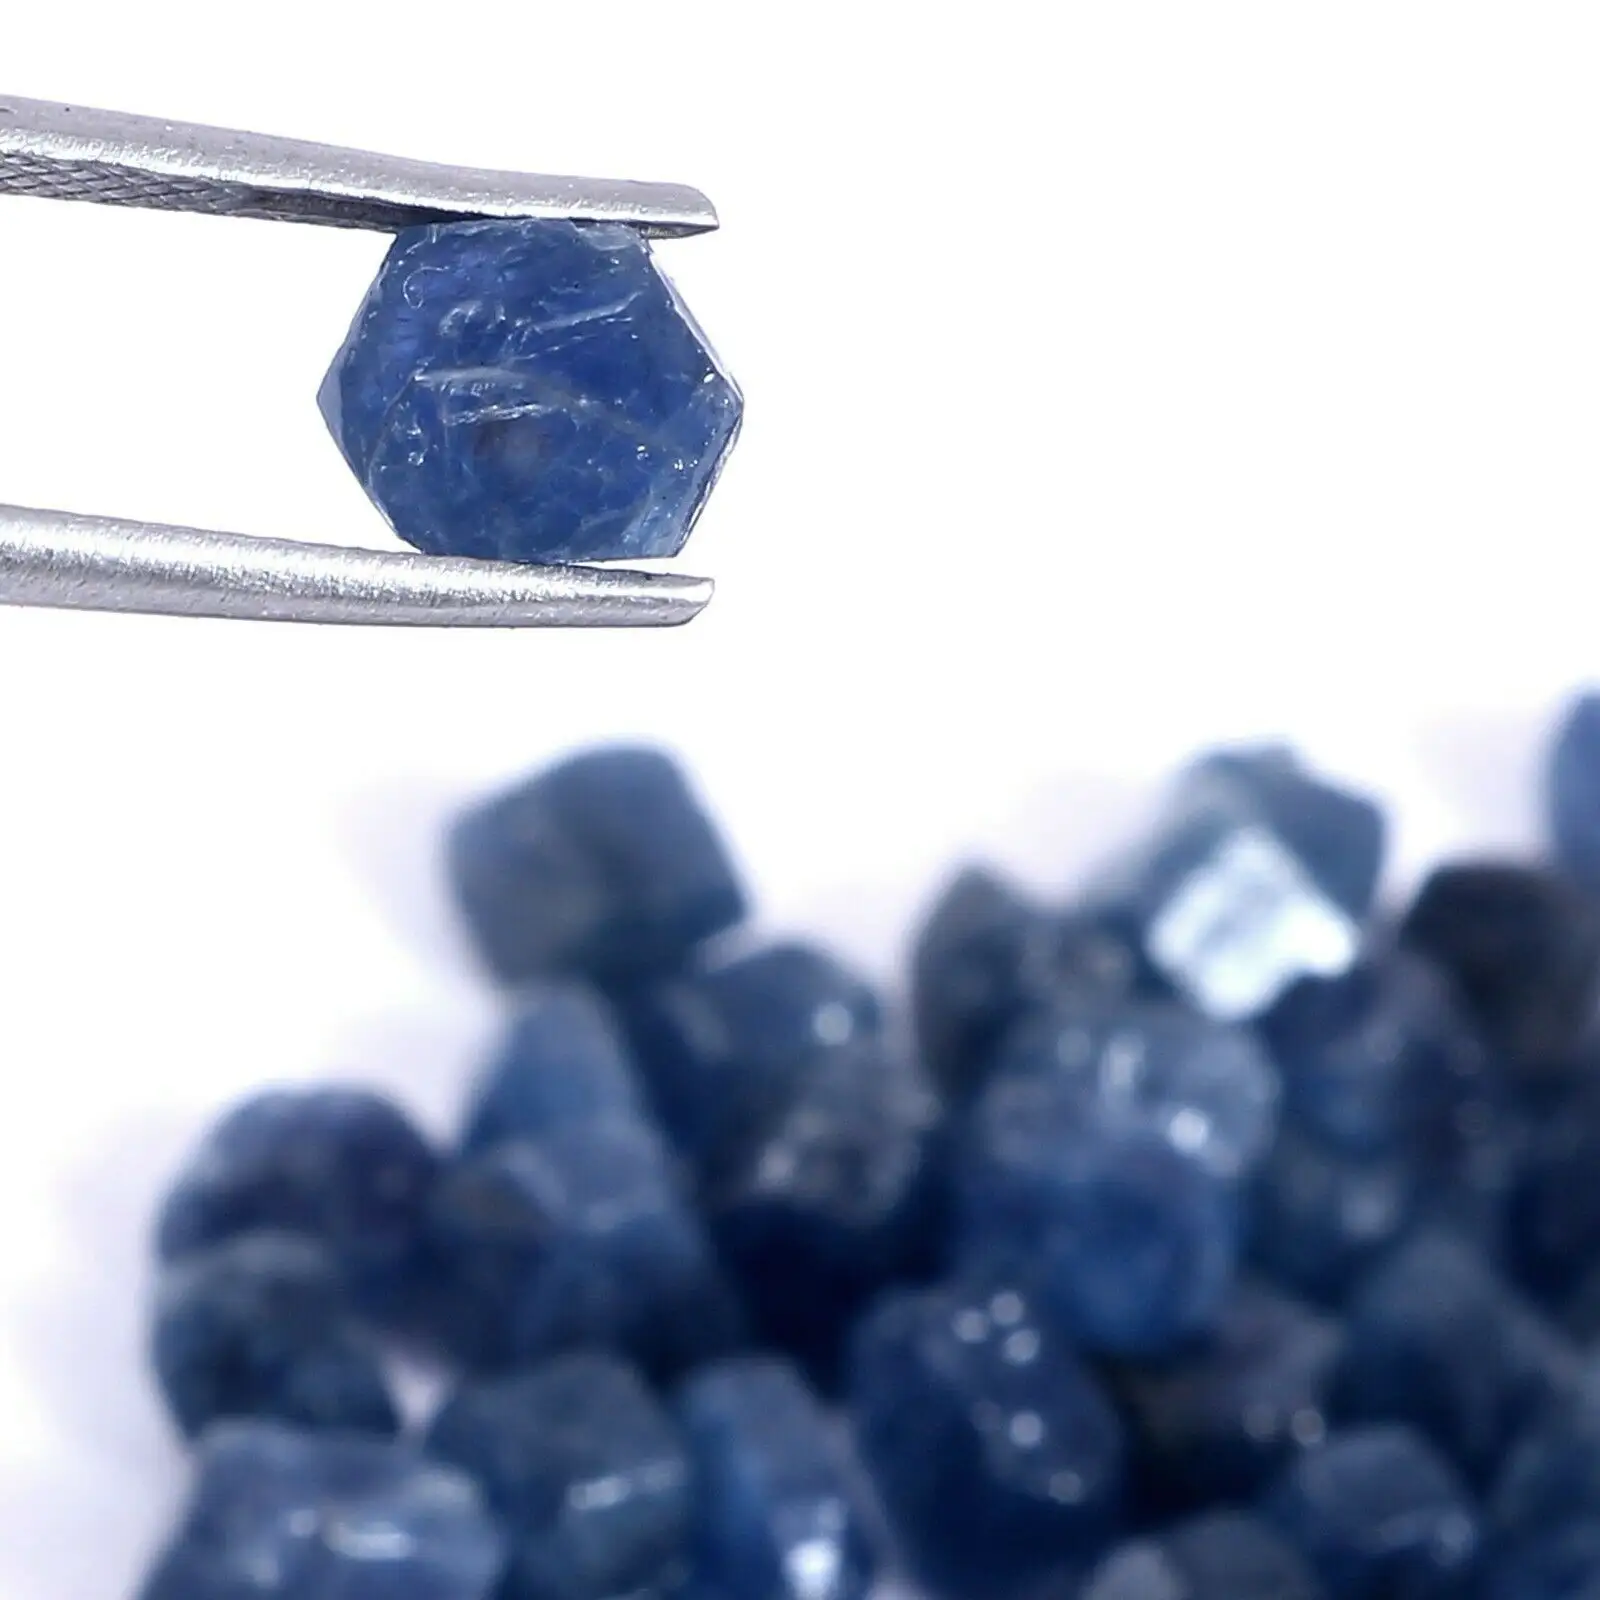 AAA الطبيعي Earthmined غير مدفأة غير المعالجة الأفريقي الأزرق الياقوت فضفاض أحجار كريمة خام الويكا الصخور المعادن صنع المجوهرات الخام